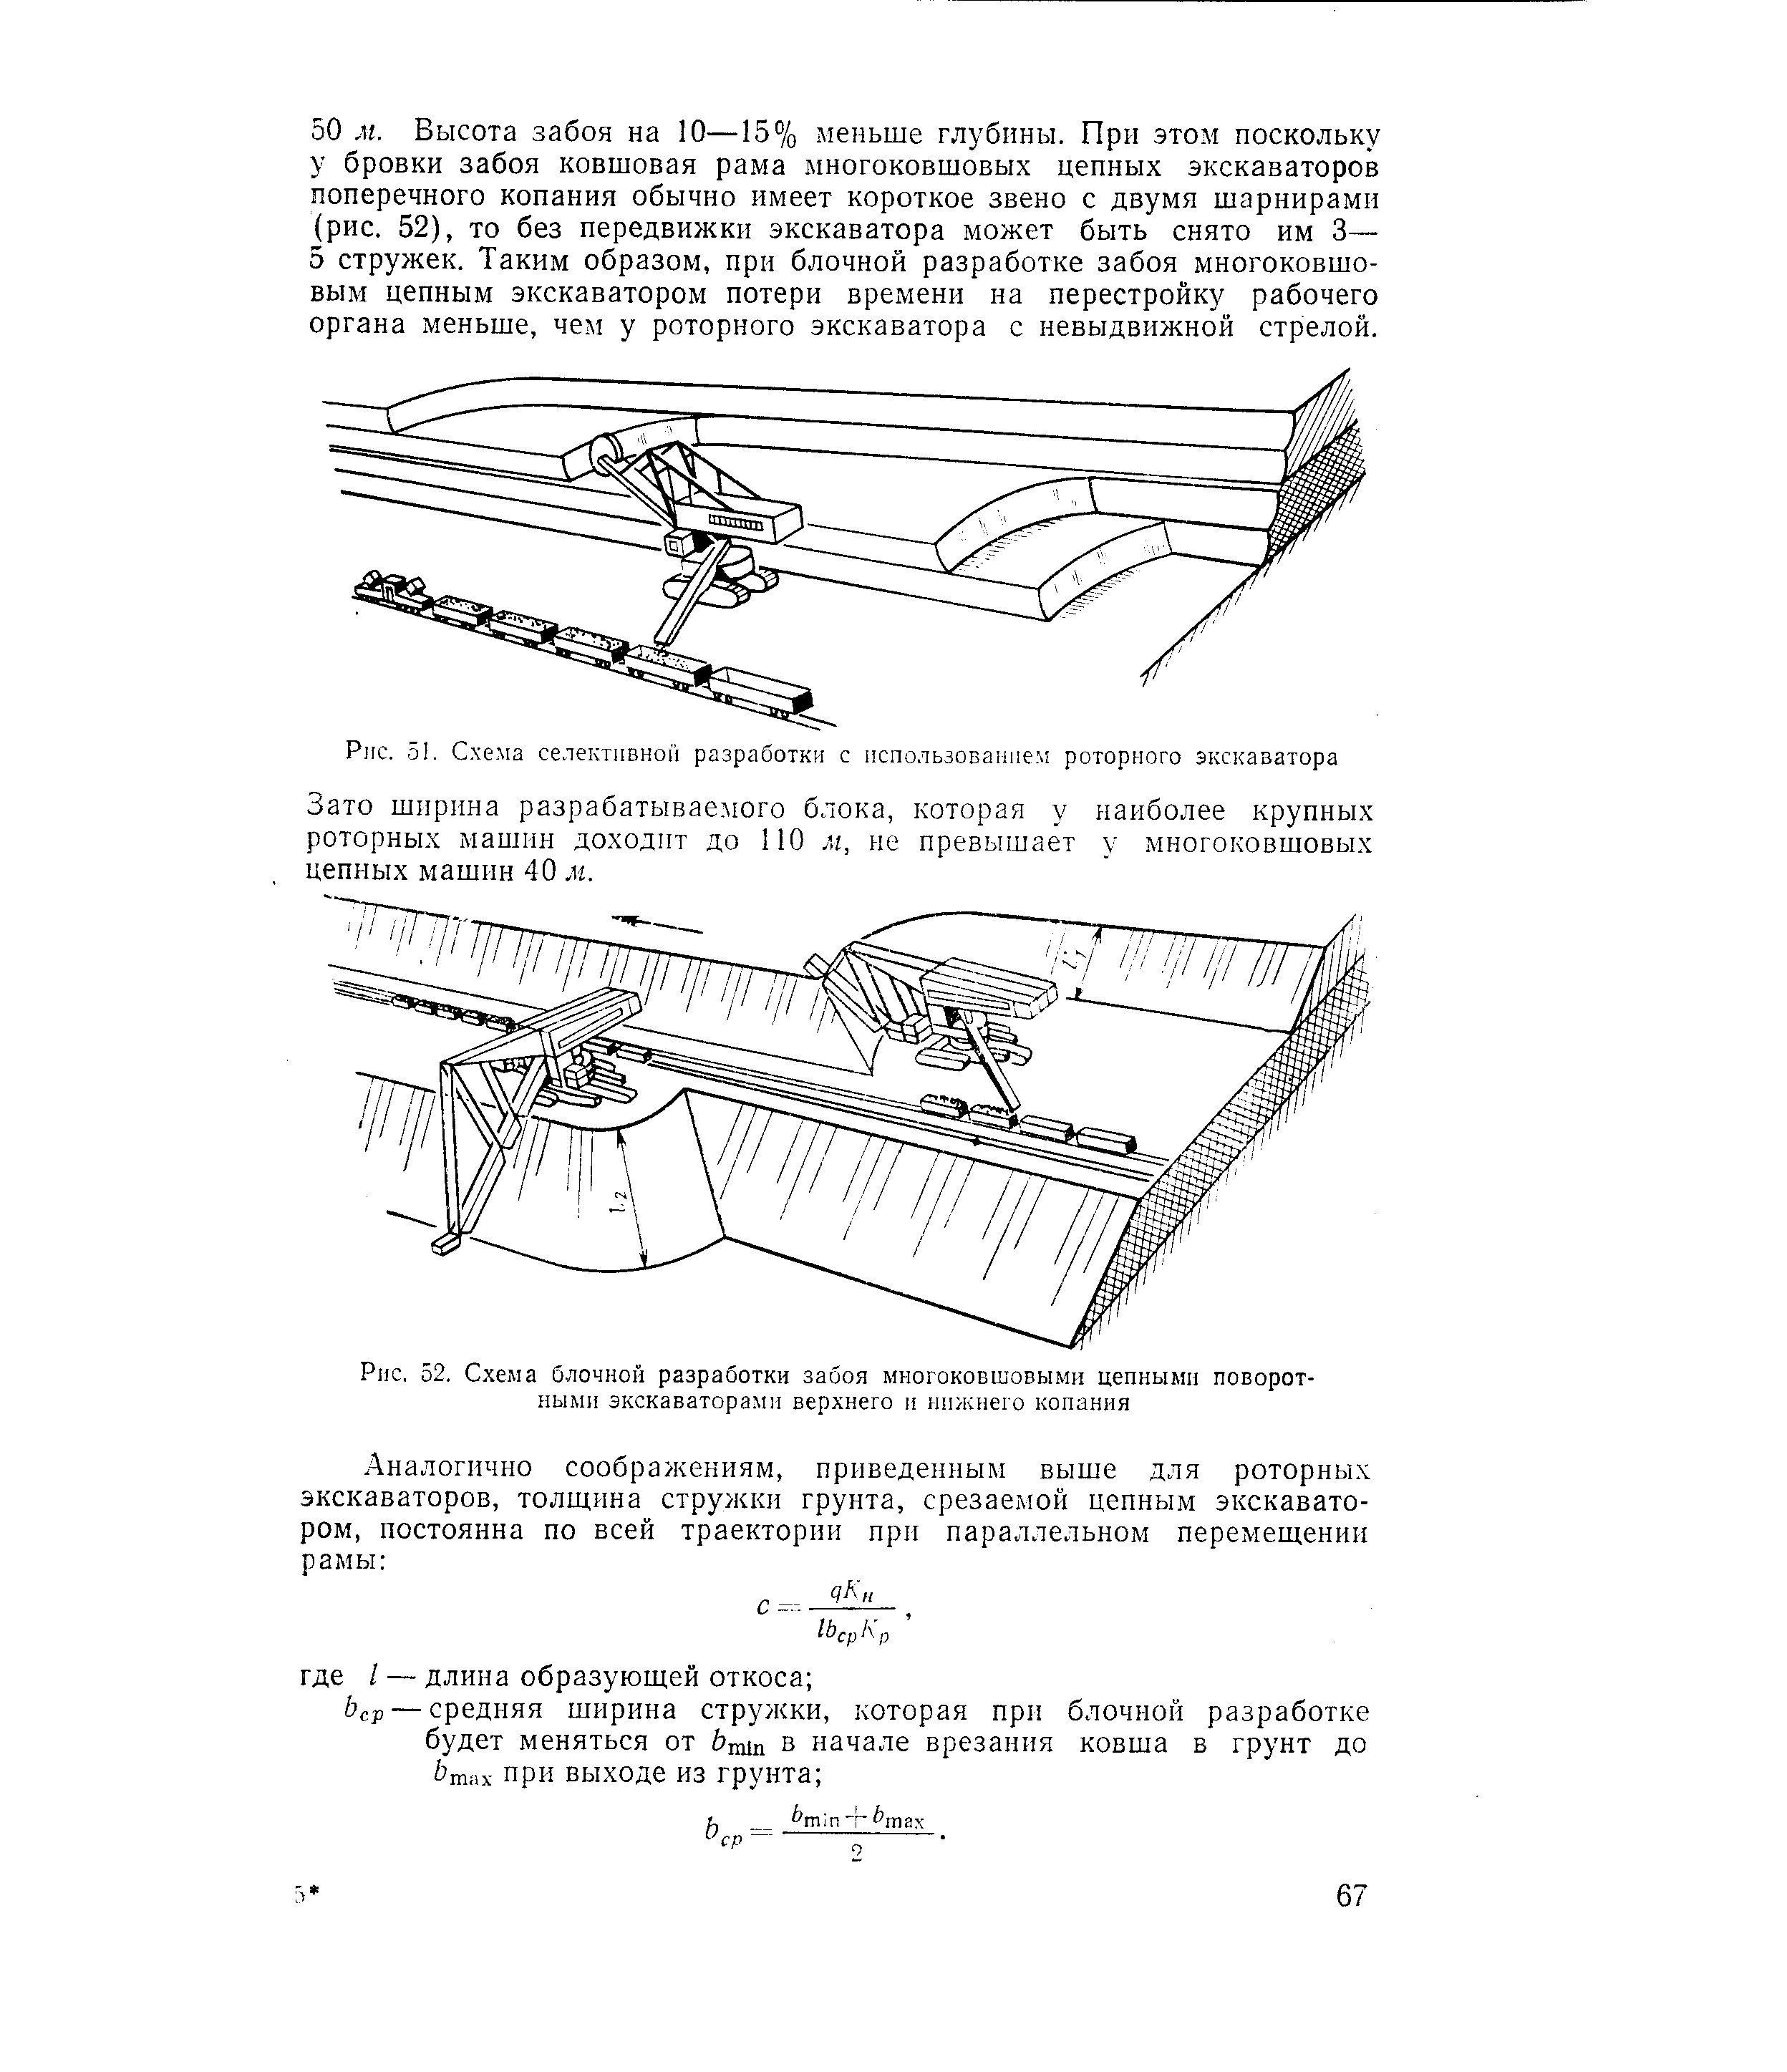 Рис. 52. Схема блочной разработки забоя многоковшовыми цепными поворотными экскаваторами верхнего п нижнего копания
